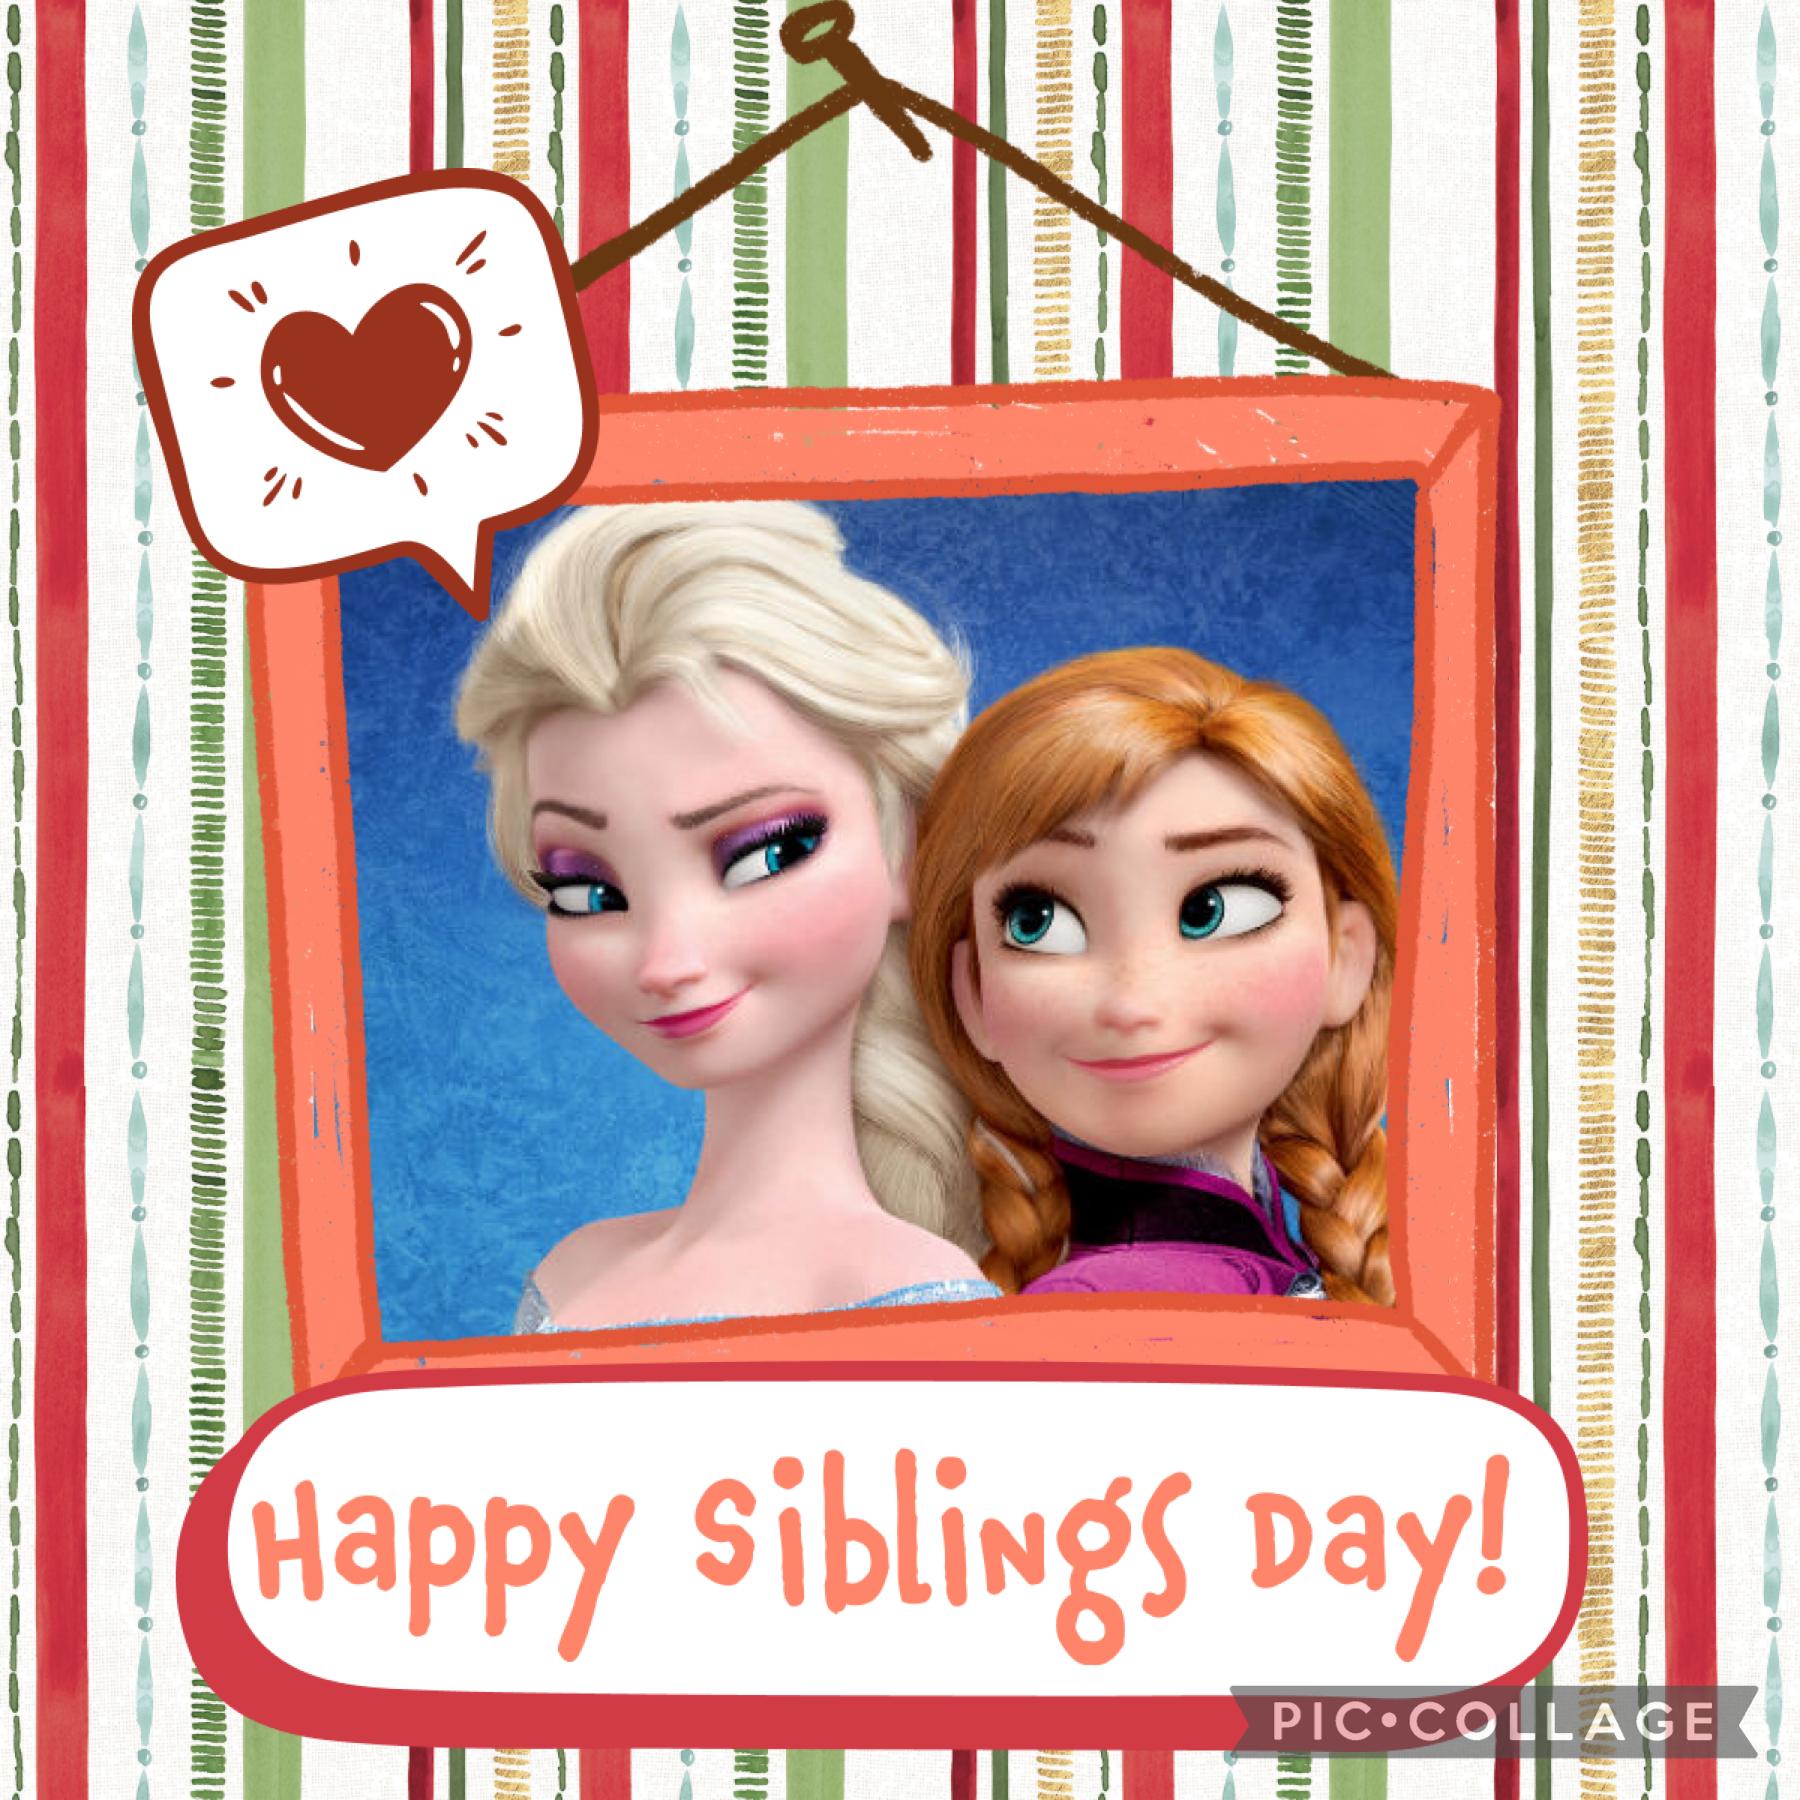 Happy siblings day 